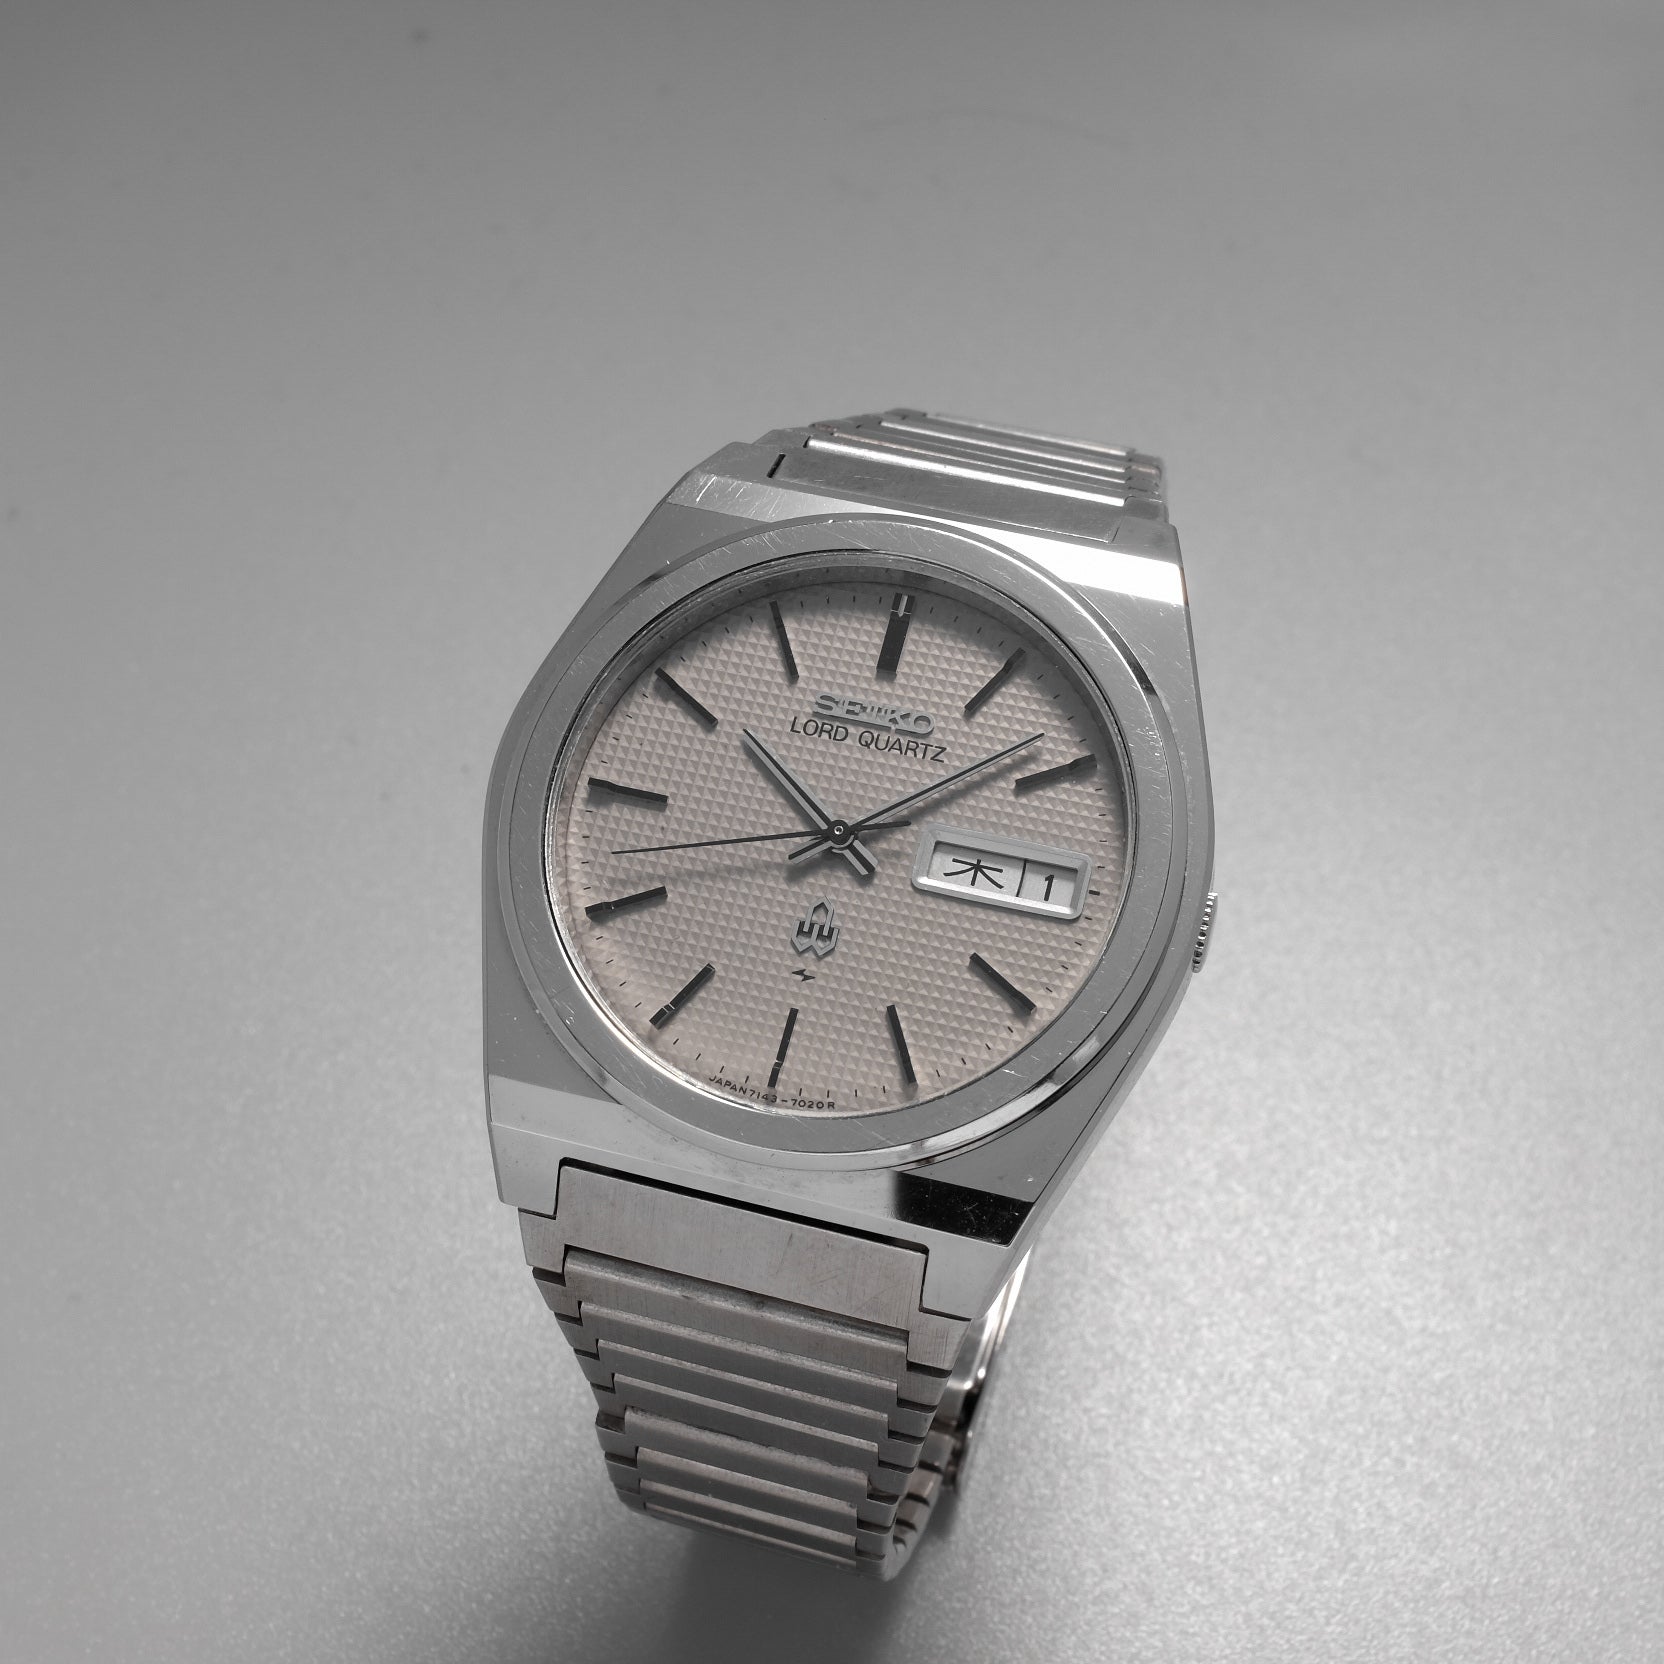 SEIKO LORD QUARTZ 7143-7000メンズクォーツウォッチ - 腕時計(アナログ)